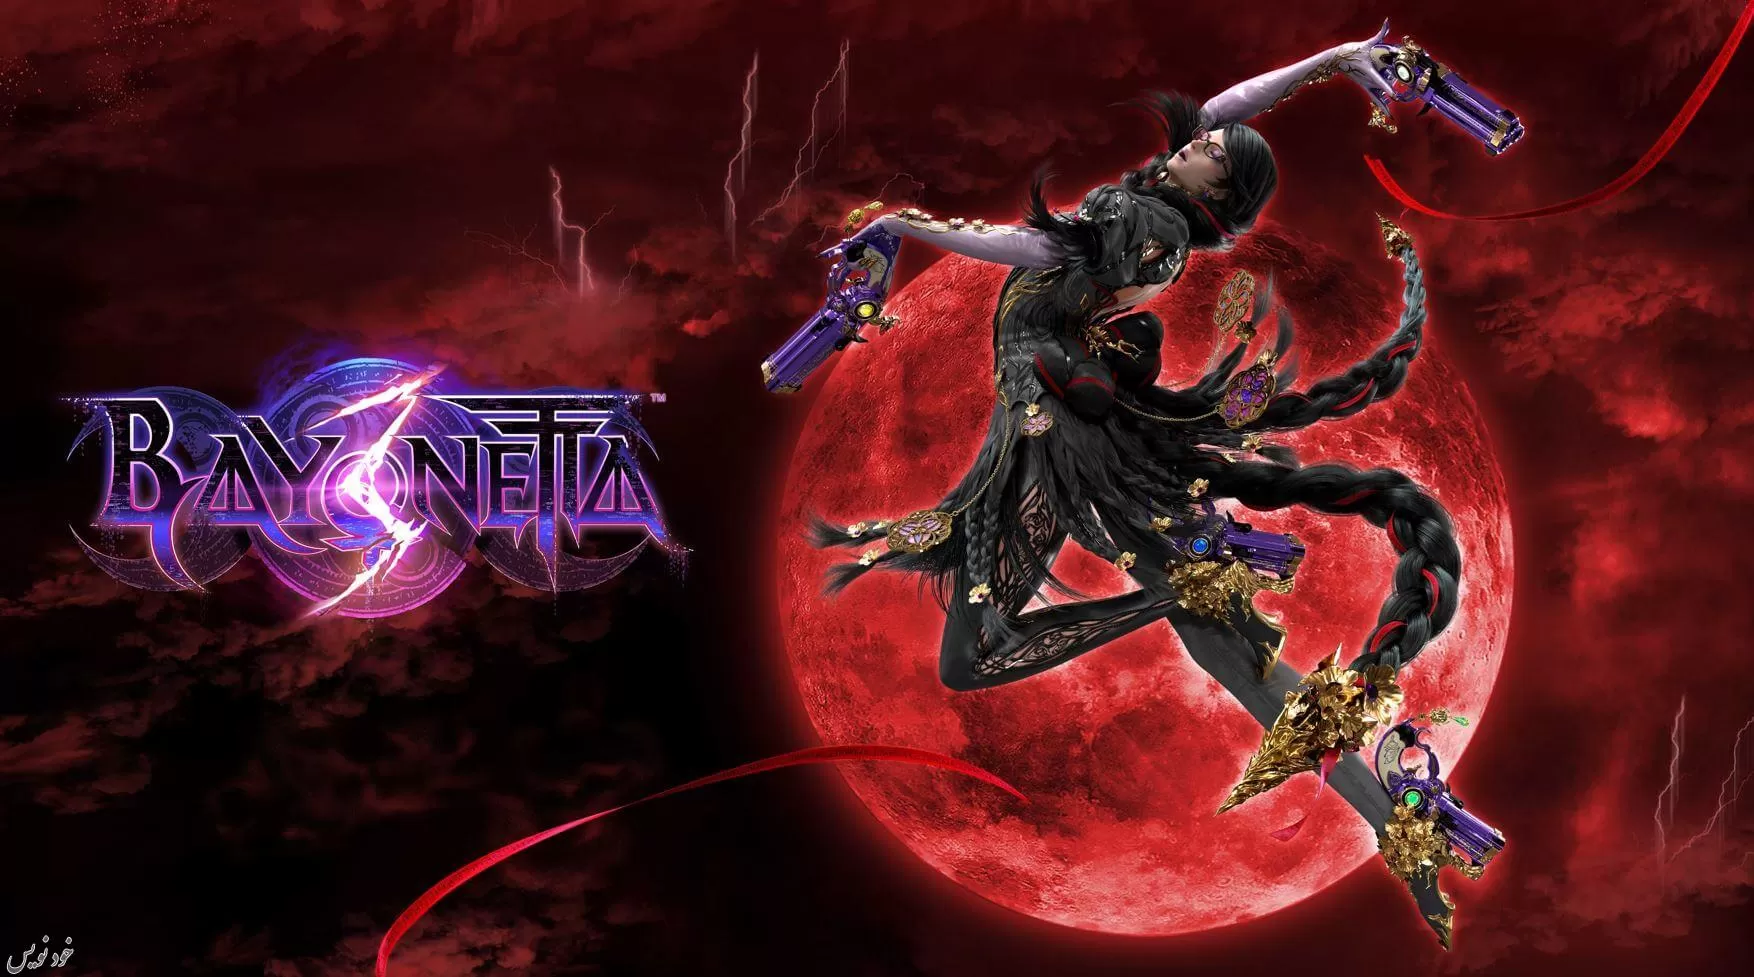 تاریخ عرضه بازی Bayonetta 3 رسما اعلام شد؛ تأیید شخصیت قابل بازی جدید | تاریخ 28 اکتبر